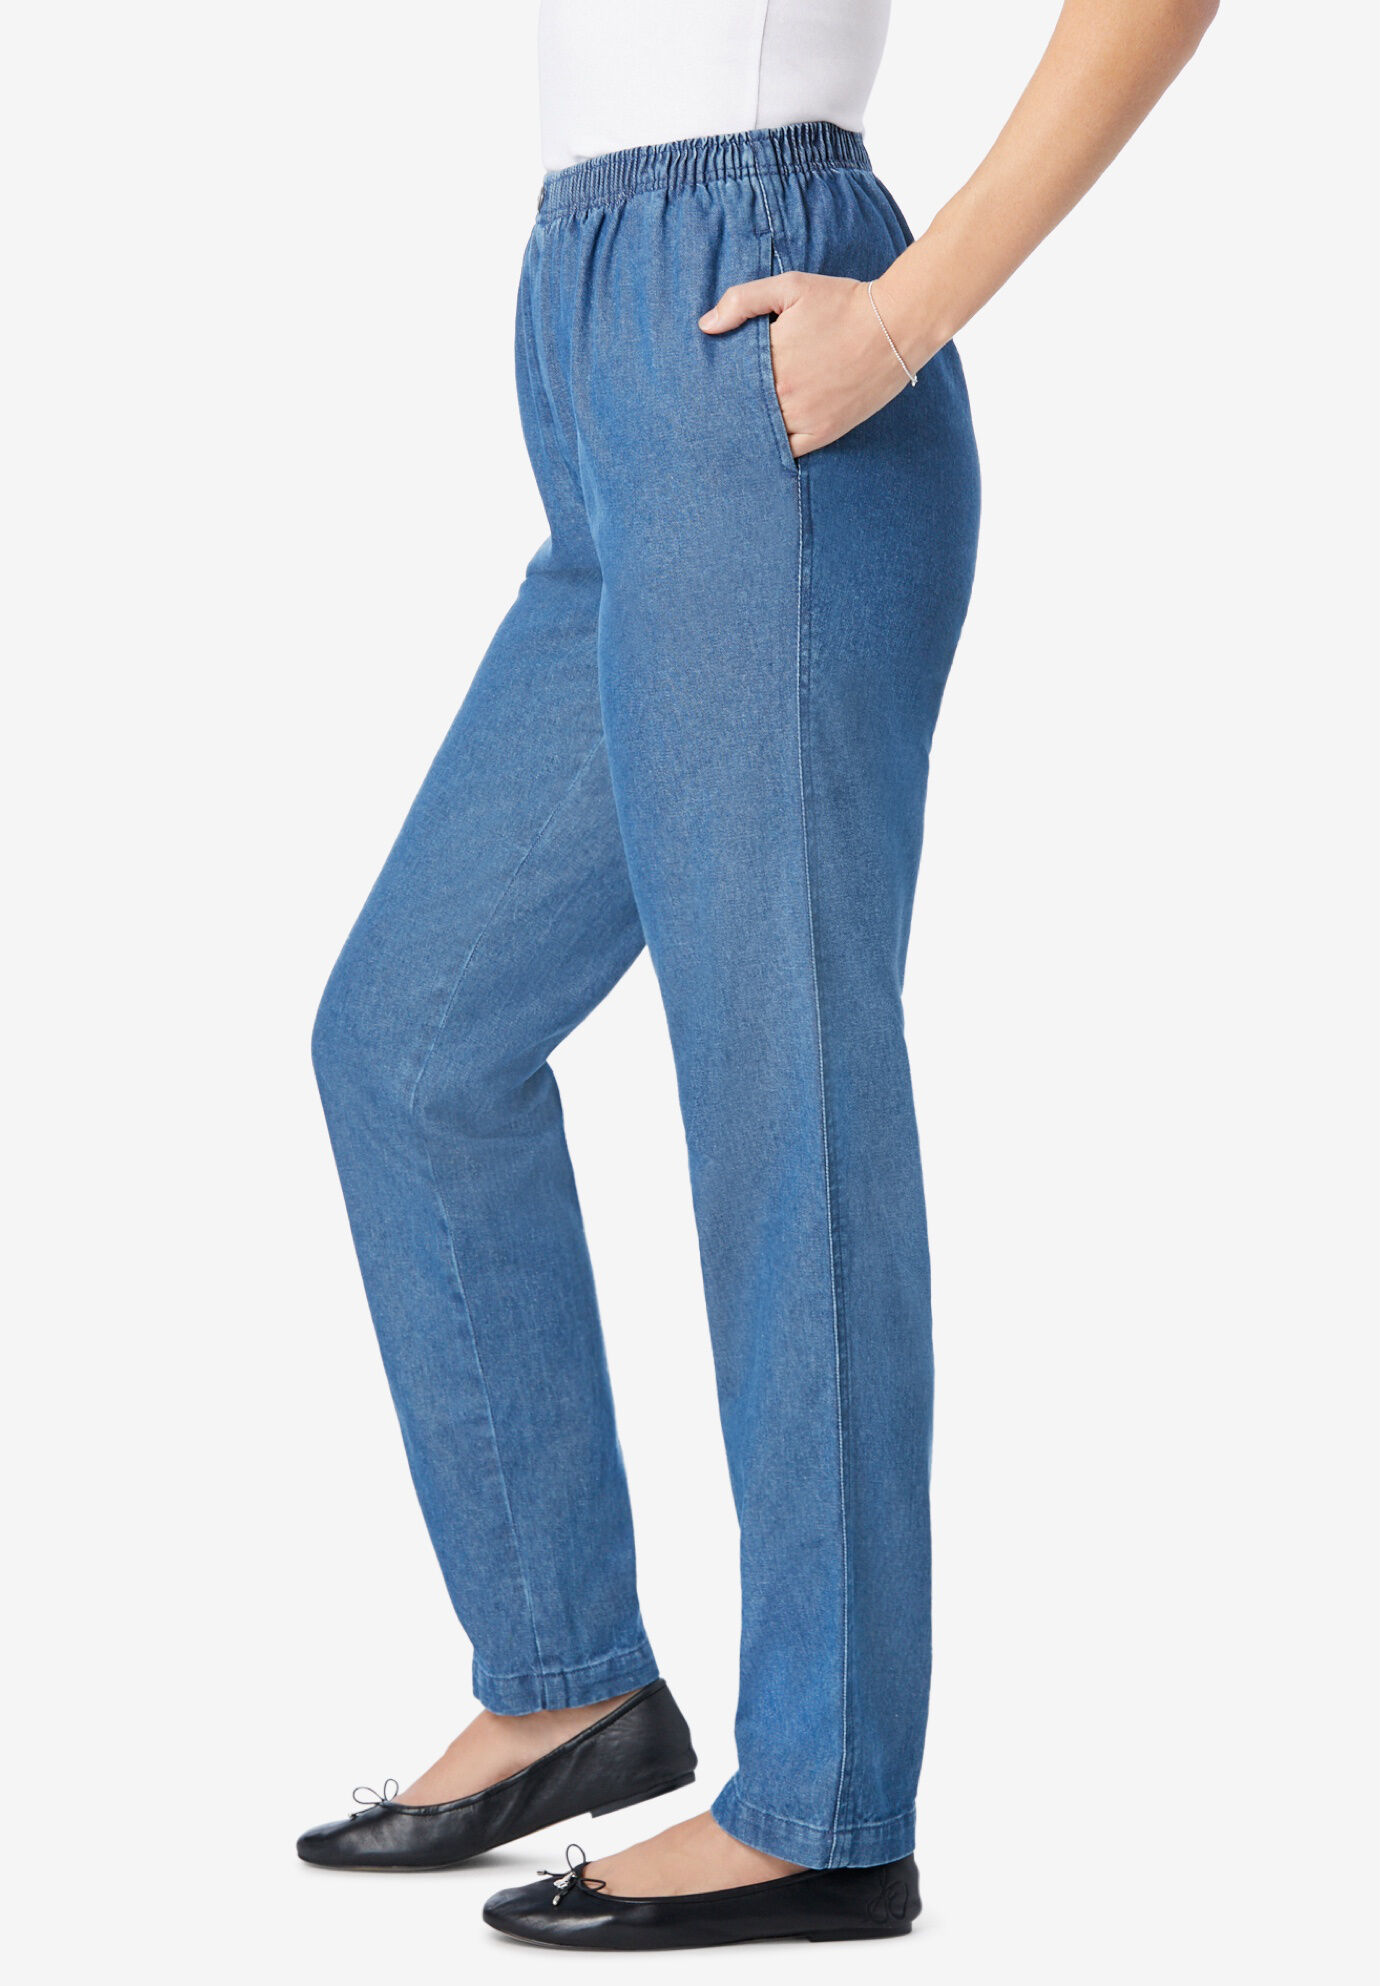 Womens Denim Pants Drawstring Elastic Waist Jeans Comfy Trousers Plus Size 6-20 